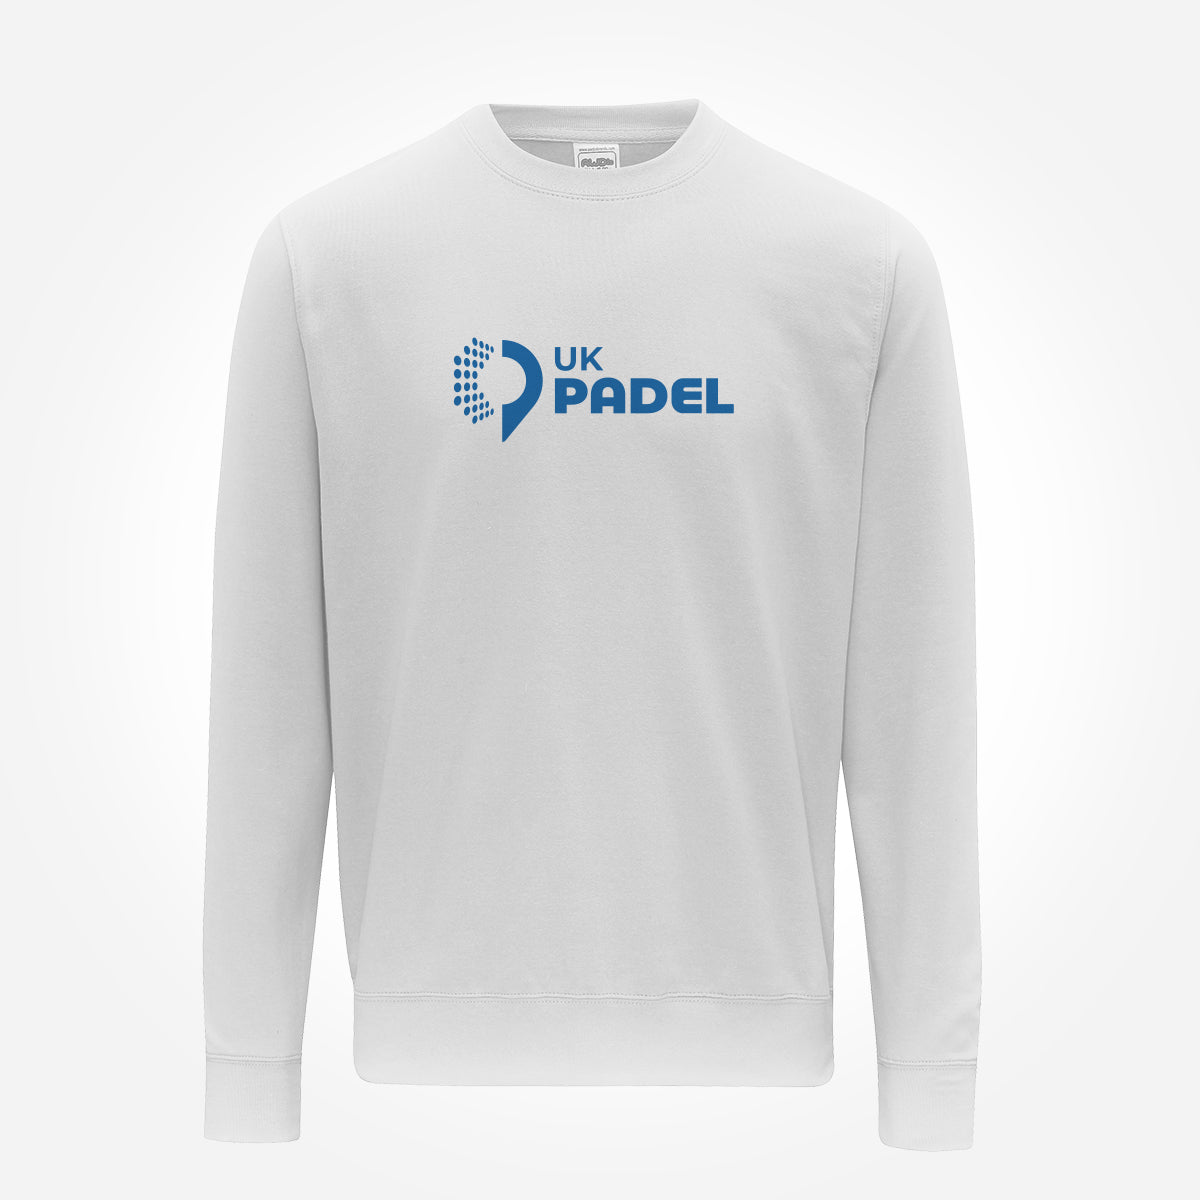 UK Padel sweatshirt big logo